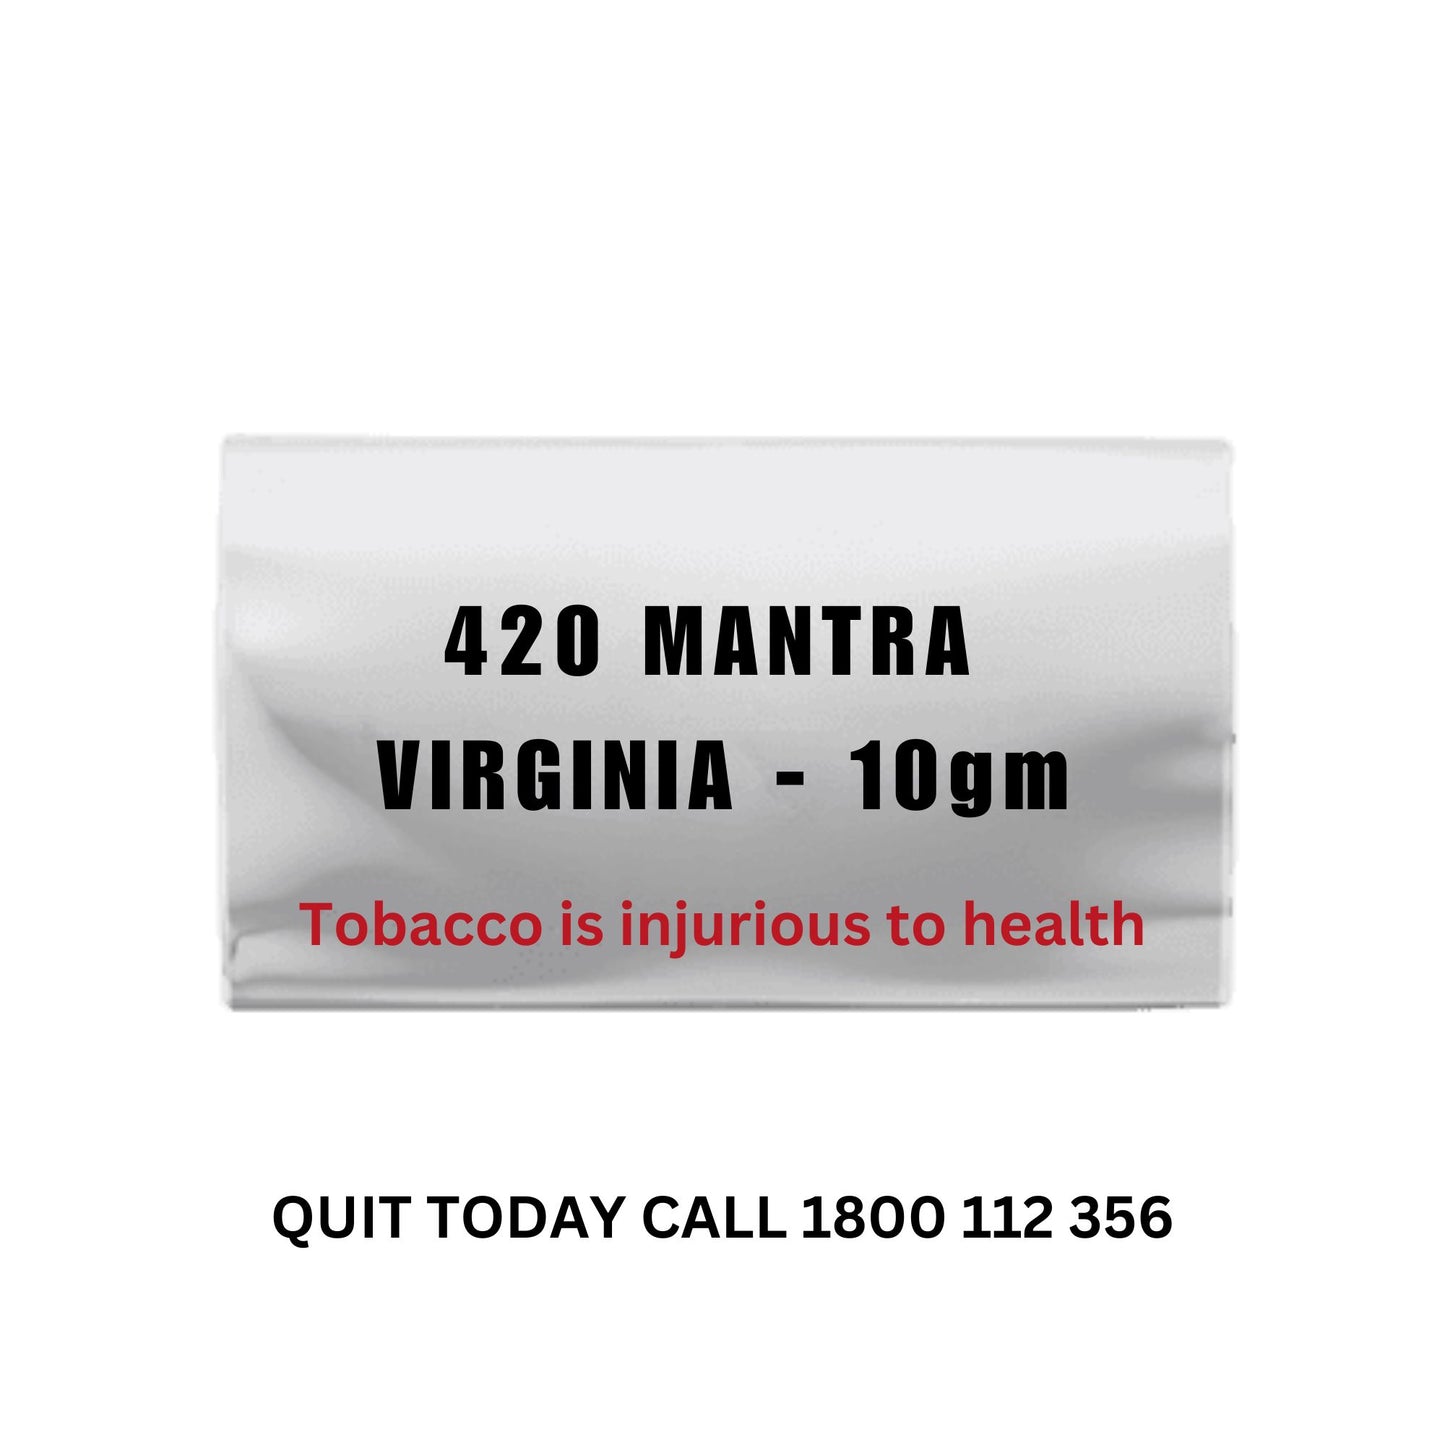 420 MANTRA VIRGINIA - 10gms